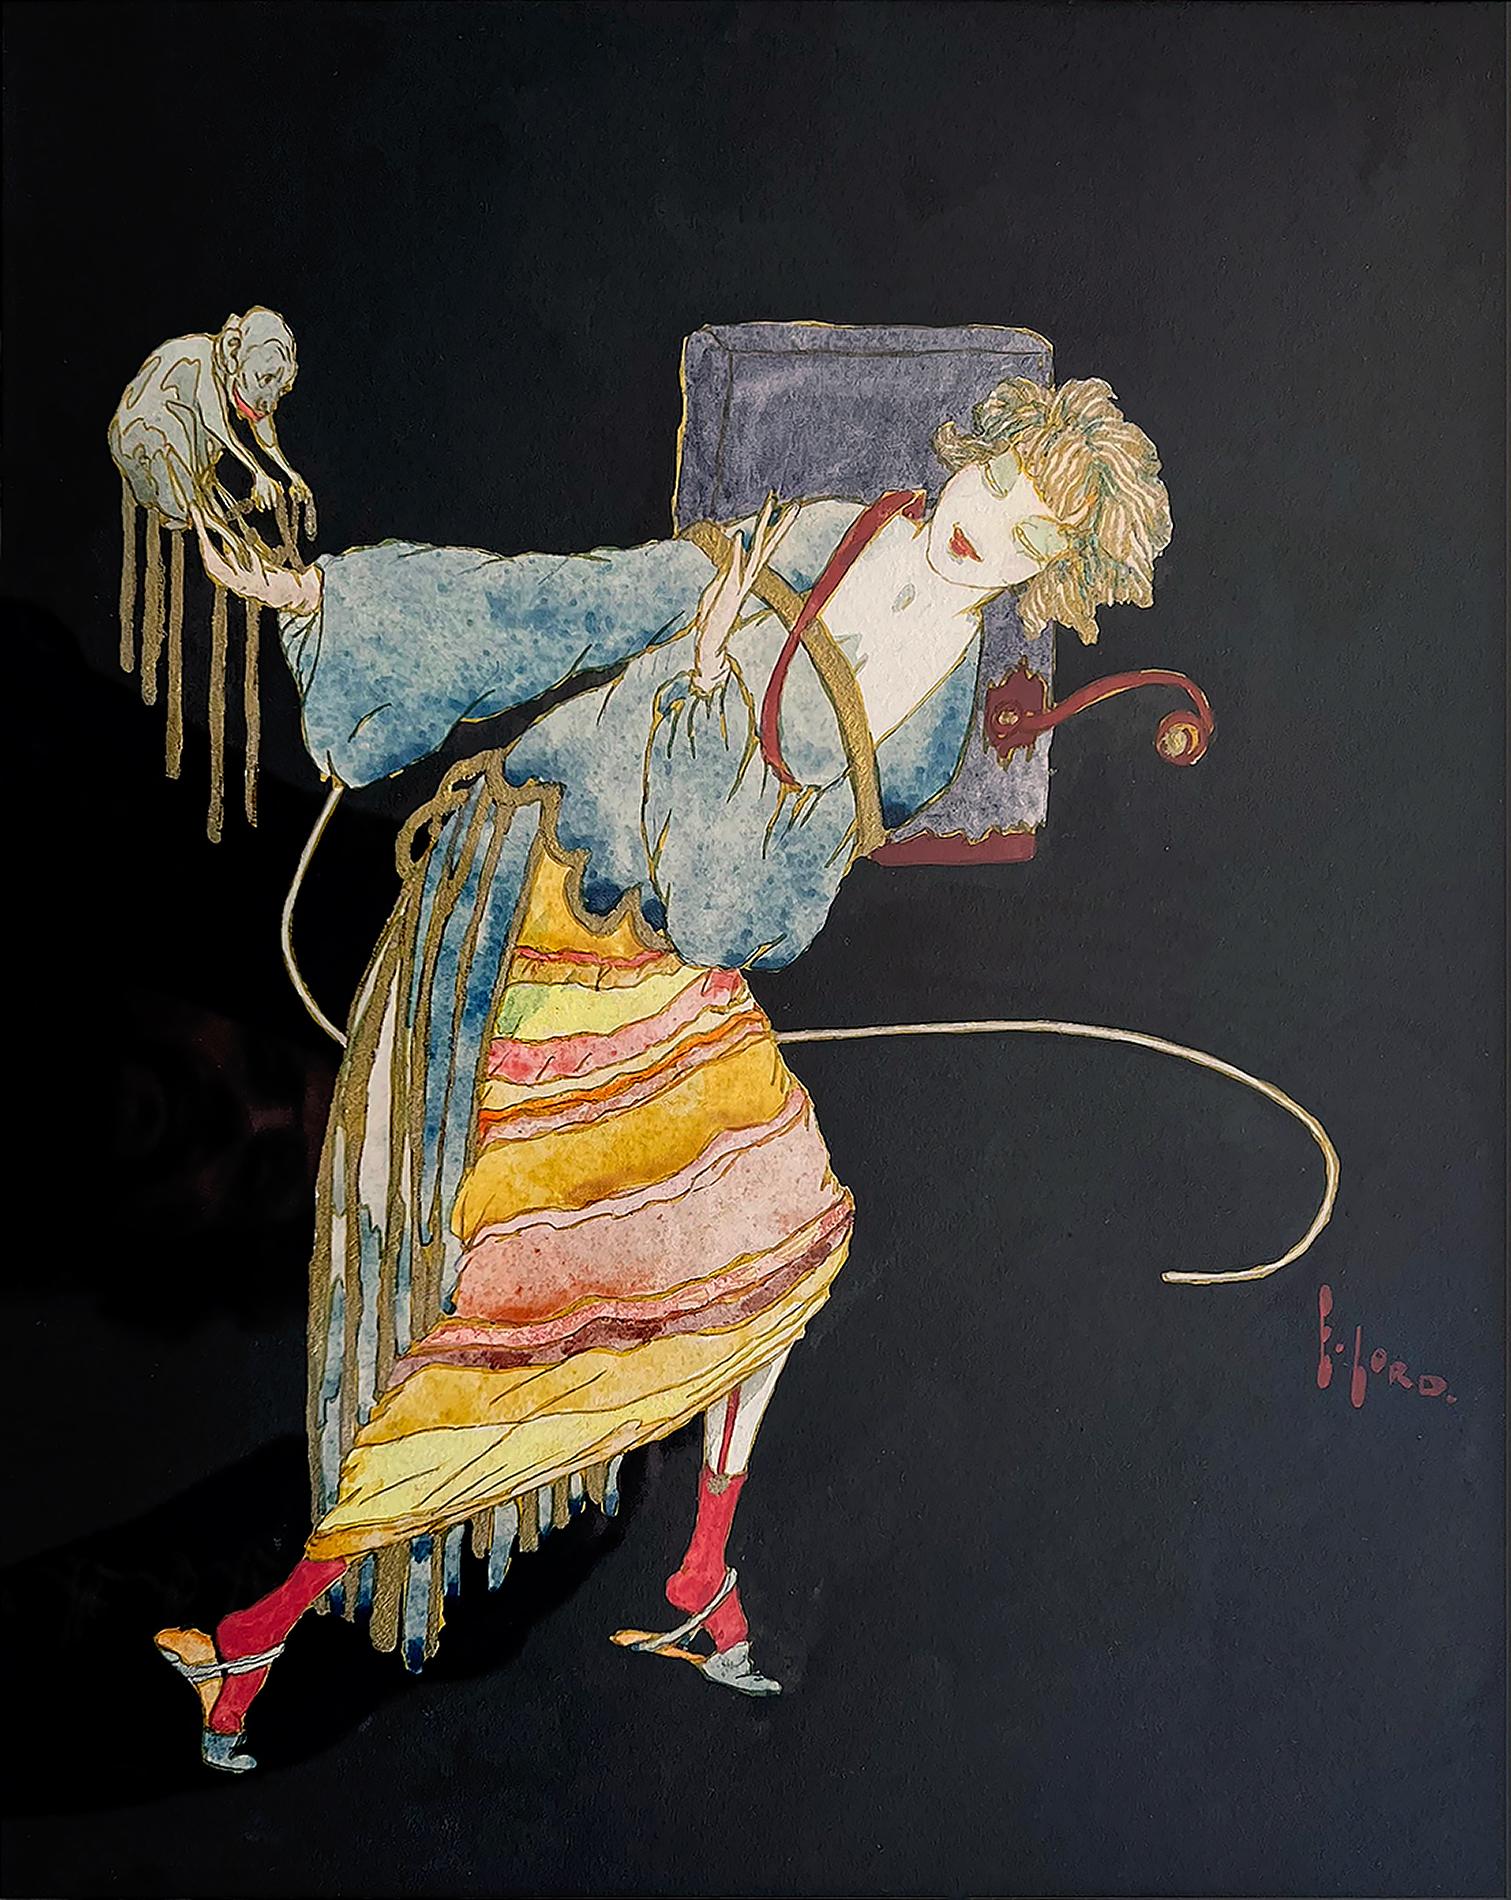  Femme tenant un singe Art Déco - Illustration féminine